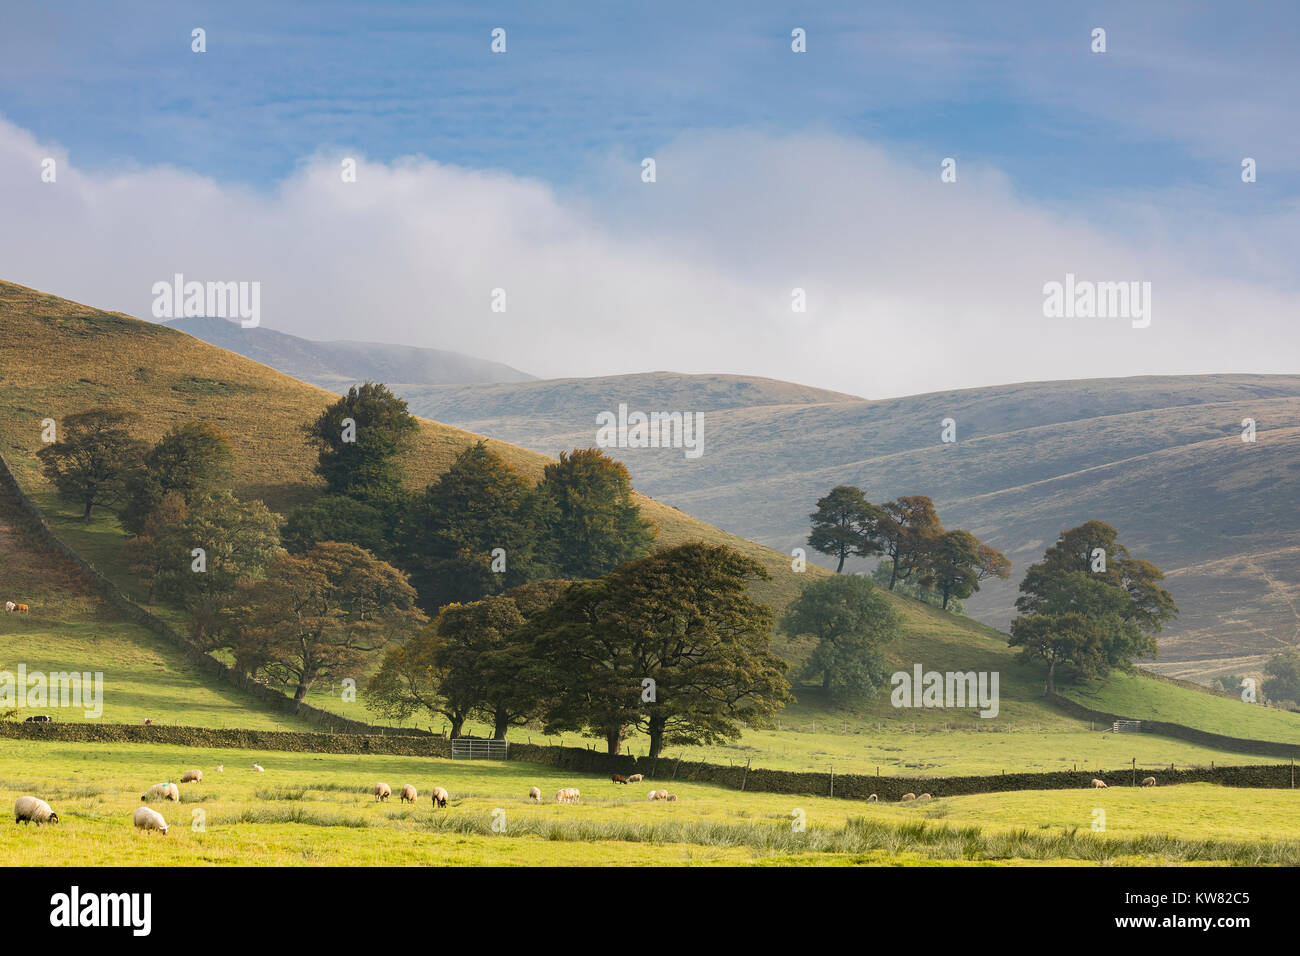 Une image d'un groupe d'arbres dans les collines brumeuses de la vallée de Edale, Derbyshire, Angleterre, Royaume-Uni. Edale est une partie du parc national de Peak District. Banque D'Images